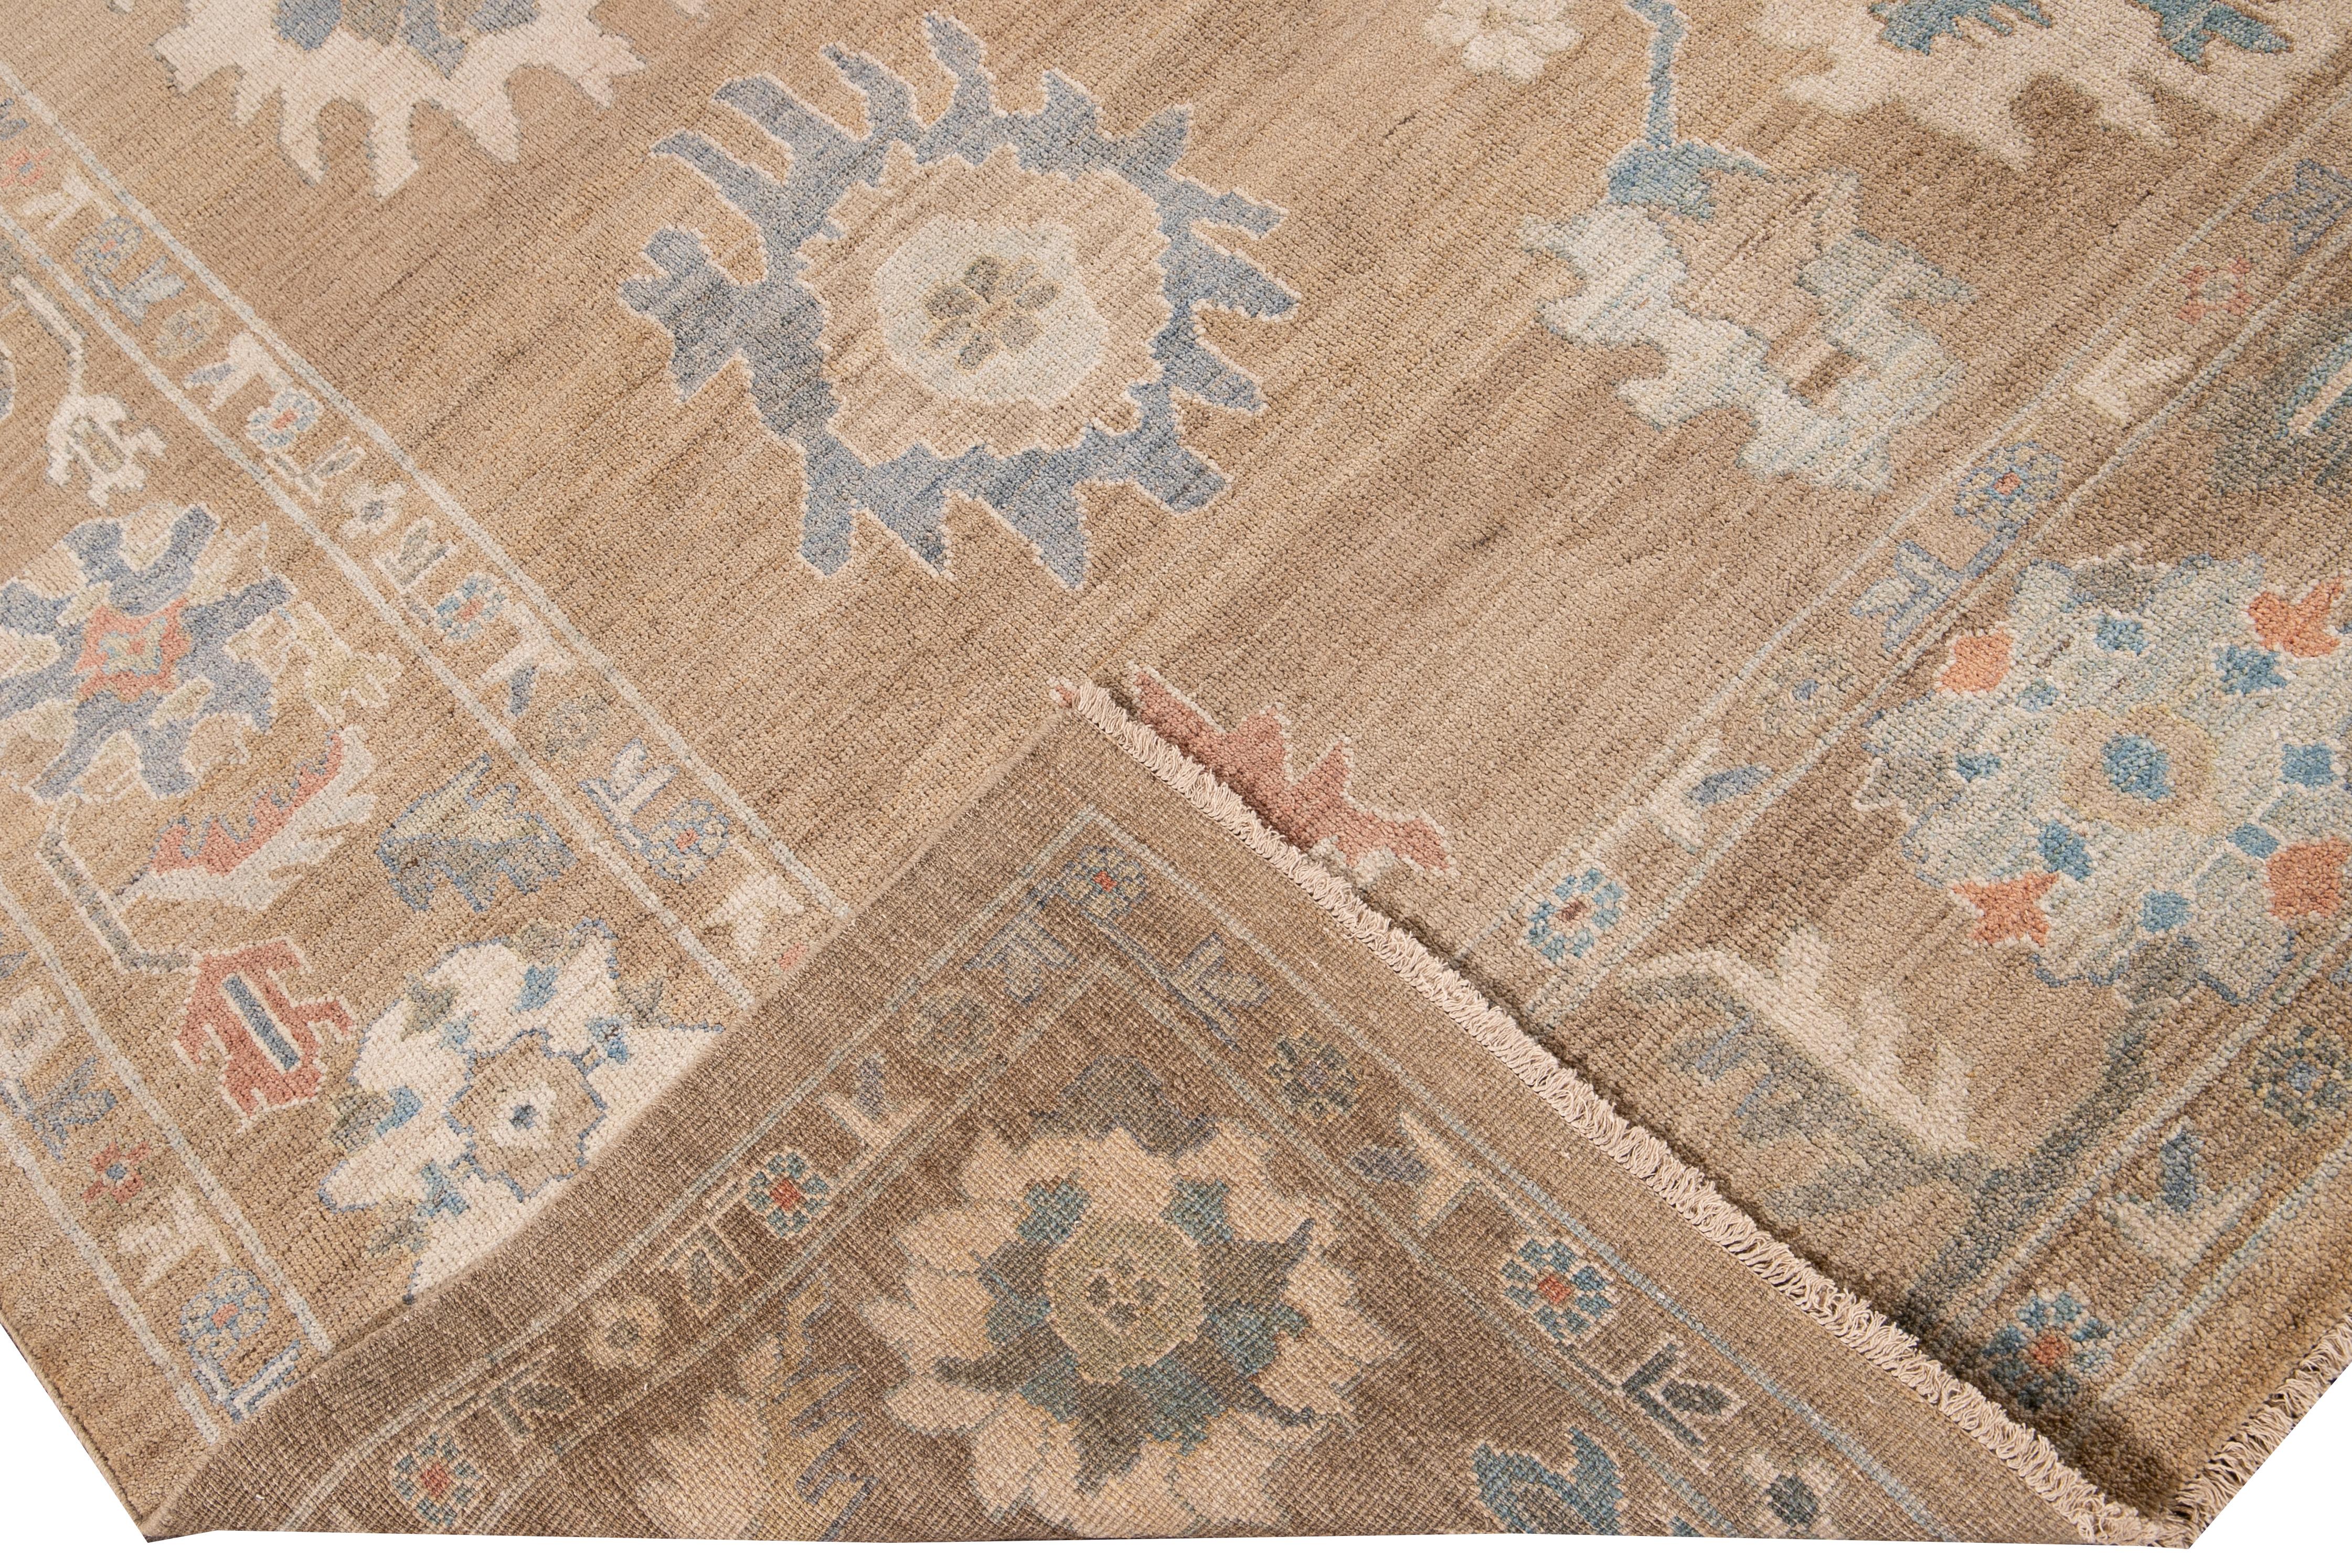 Schöner moderner, handgeknüpfter Sultanabad-Wollteppich mit braunem Feld. Dieser Sultanabad-Teppich hat einen mehrfarbigen Akzent in einem prächtigen klassischen Blumenmuster.

Dieser Teppich misst: 9'10